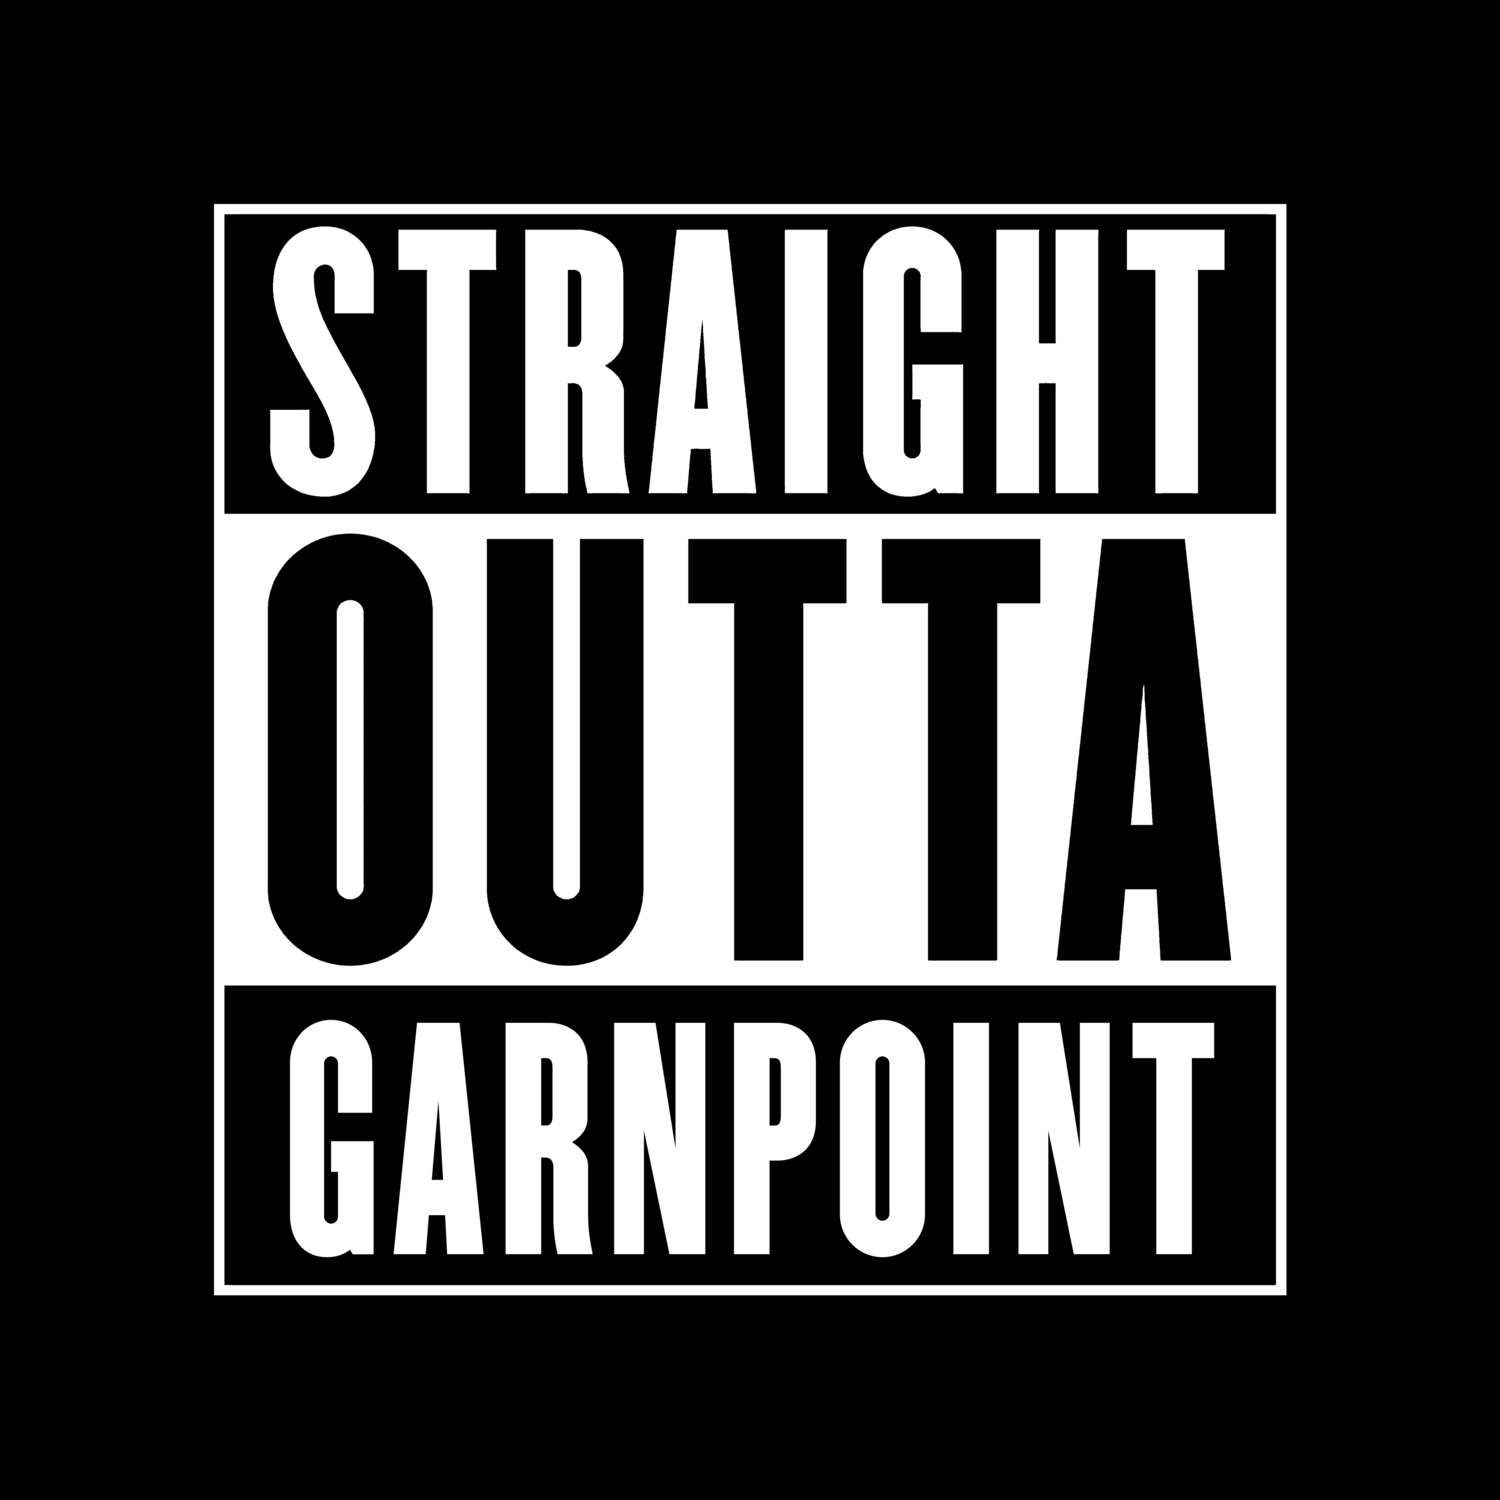 Garnpoint T-Shirt »Straight Outta«